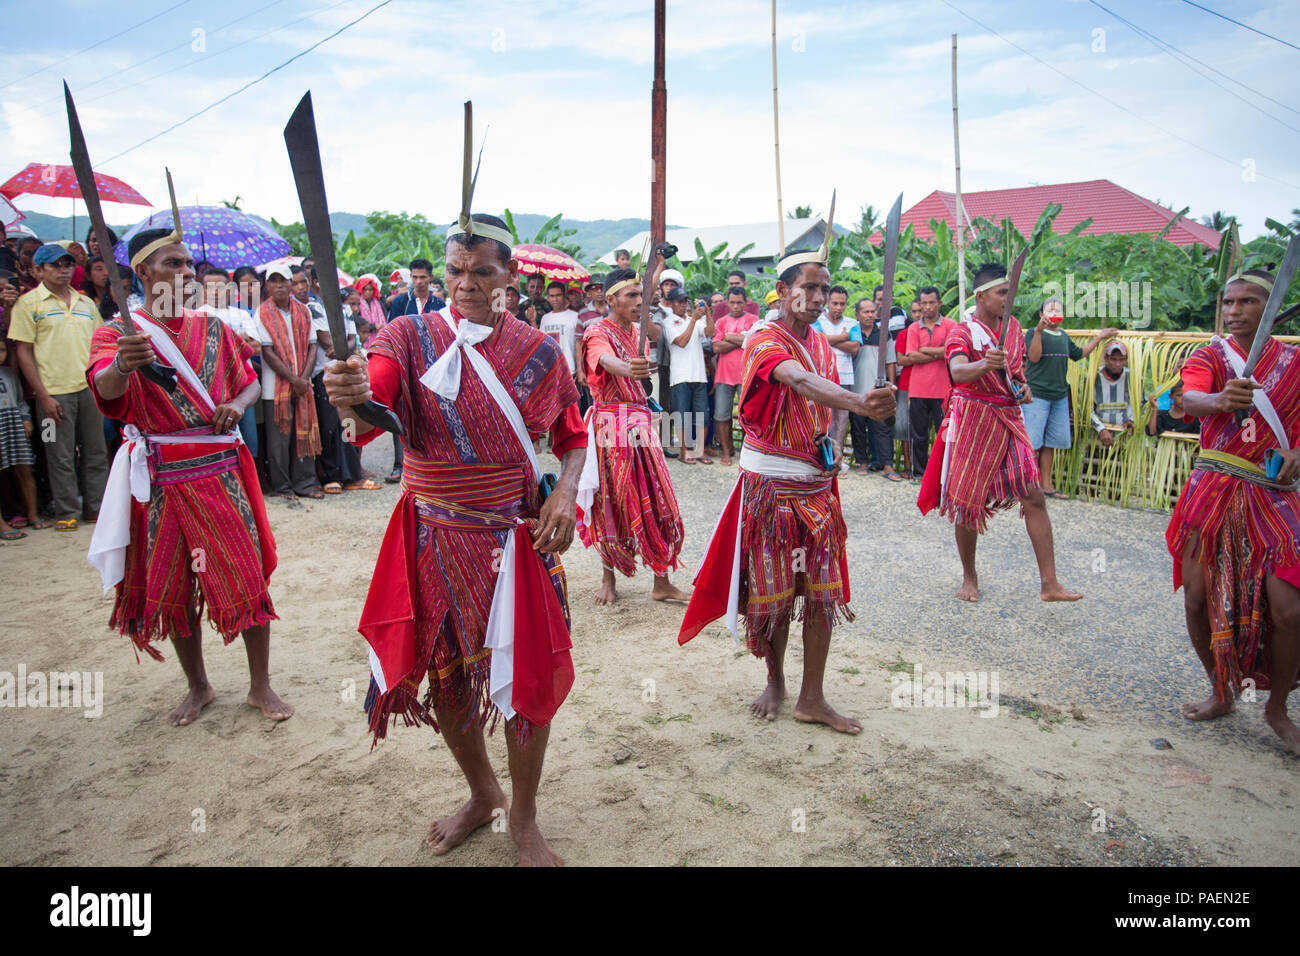 Leti Isole di festa e di celebrazioni culturali, Indonesia Foto Stock